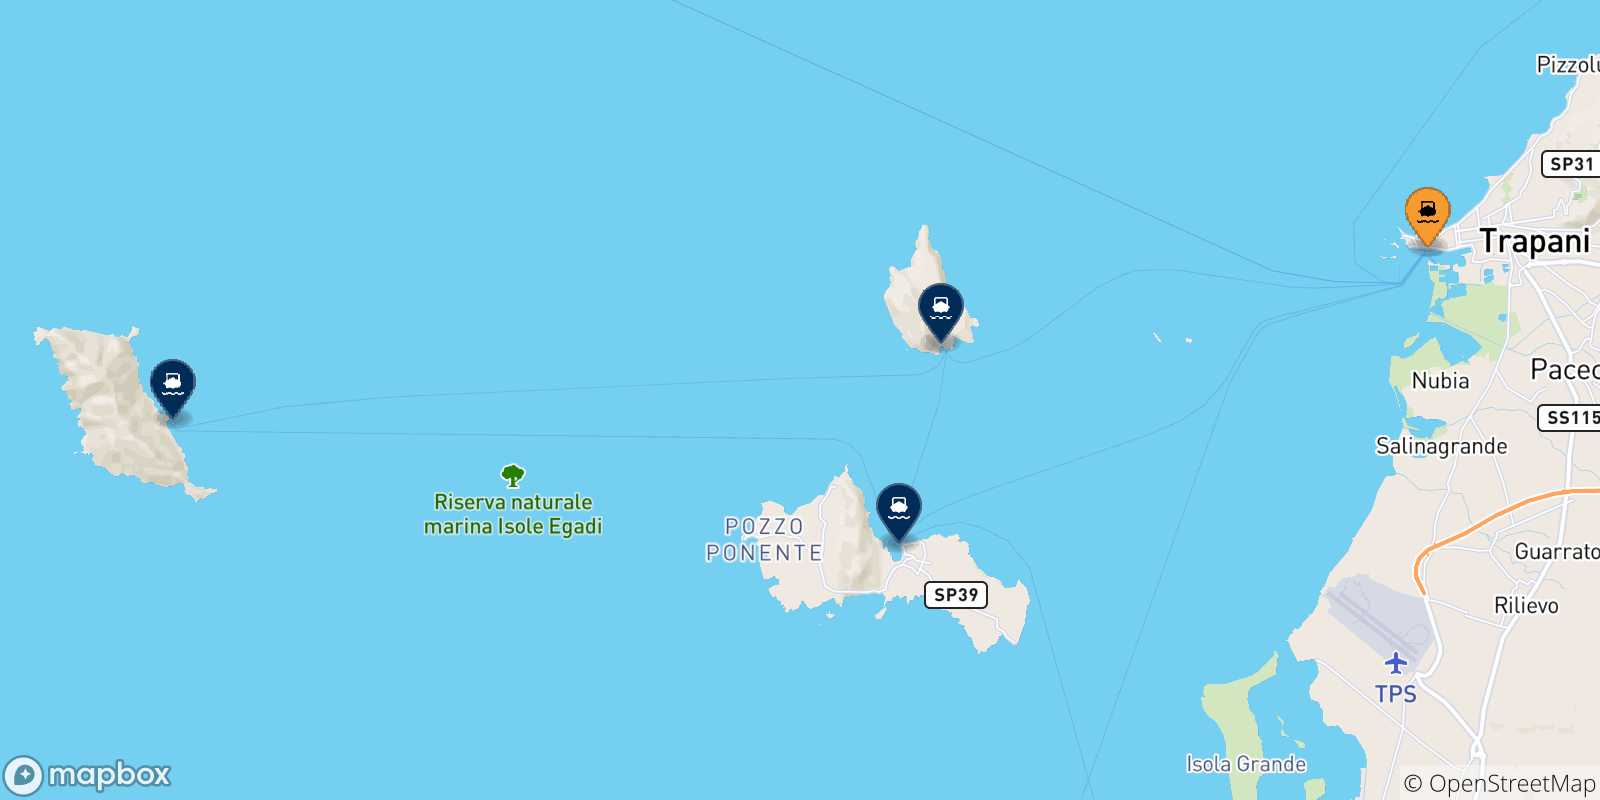 Mappa delle possibili rotte tra la Sicilia e le Isole Egadi